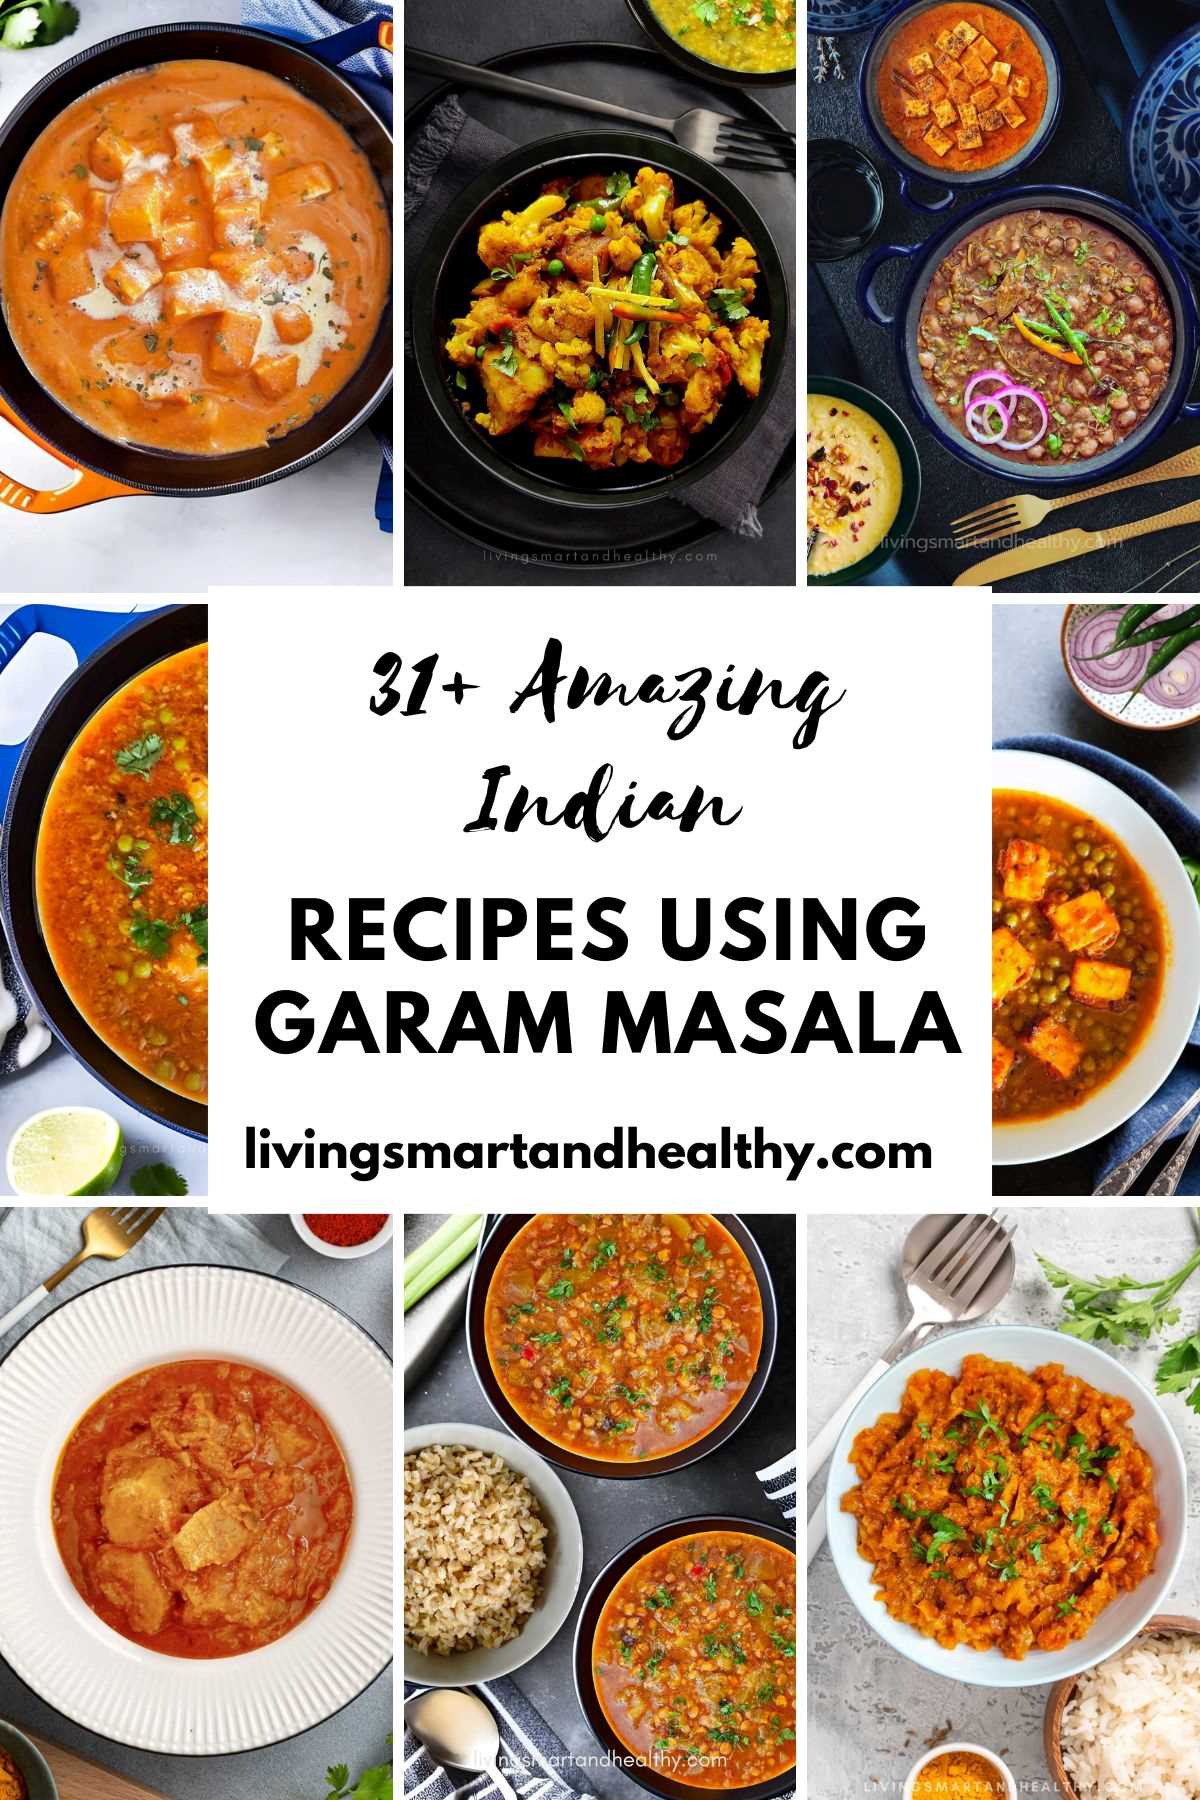 recipe with garam masala